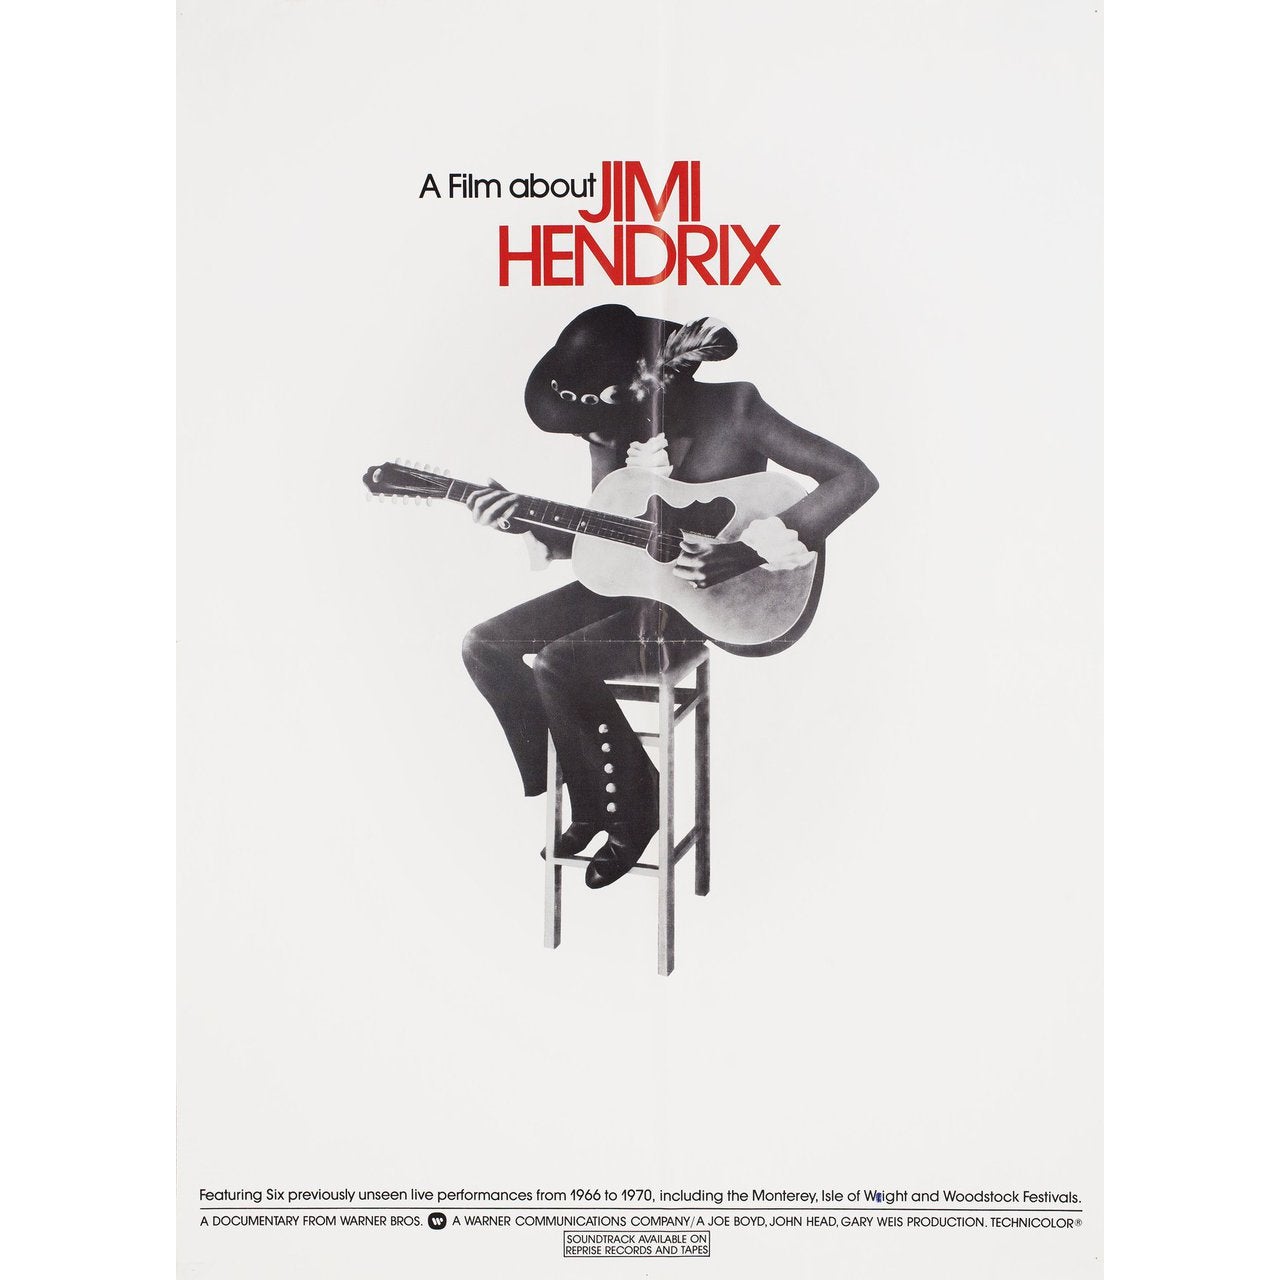 A Film about Jimi Hendrix 1973 U.S. Film Poster